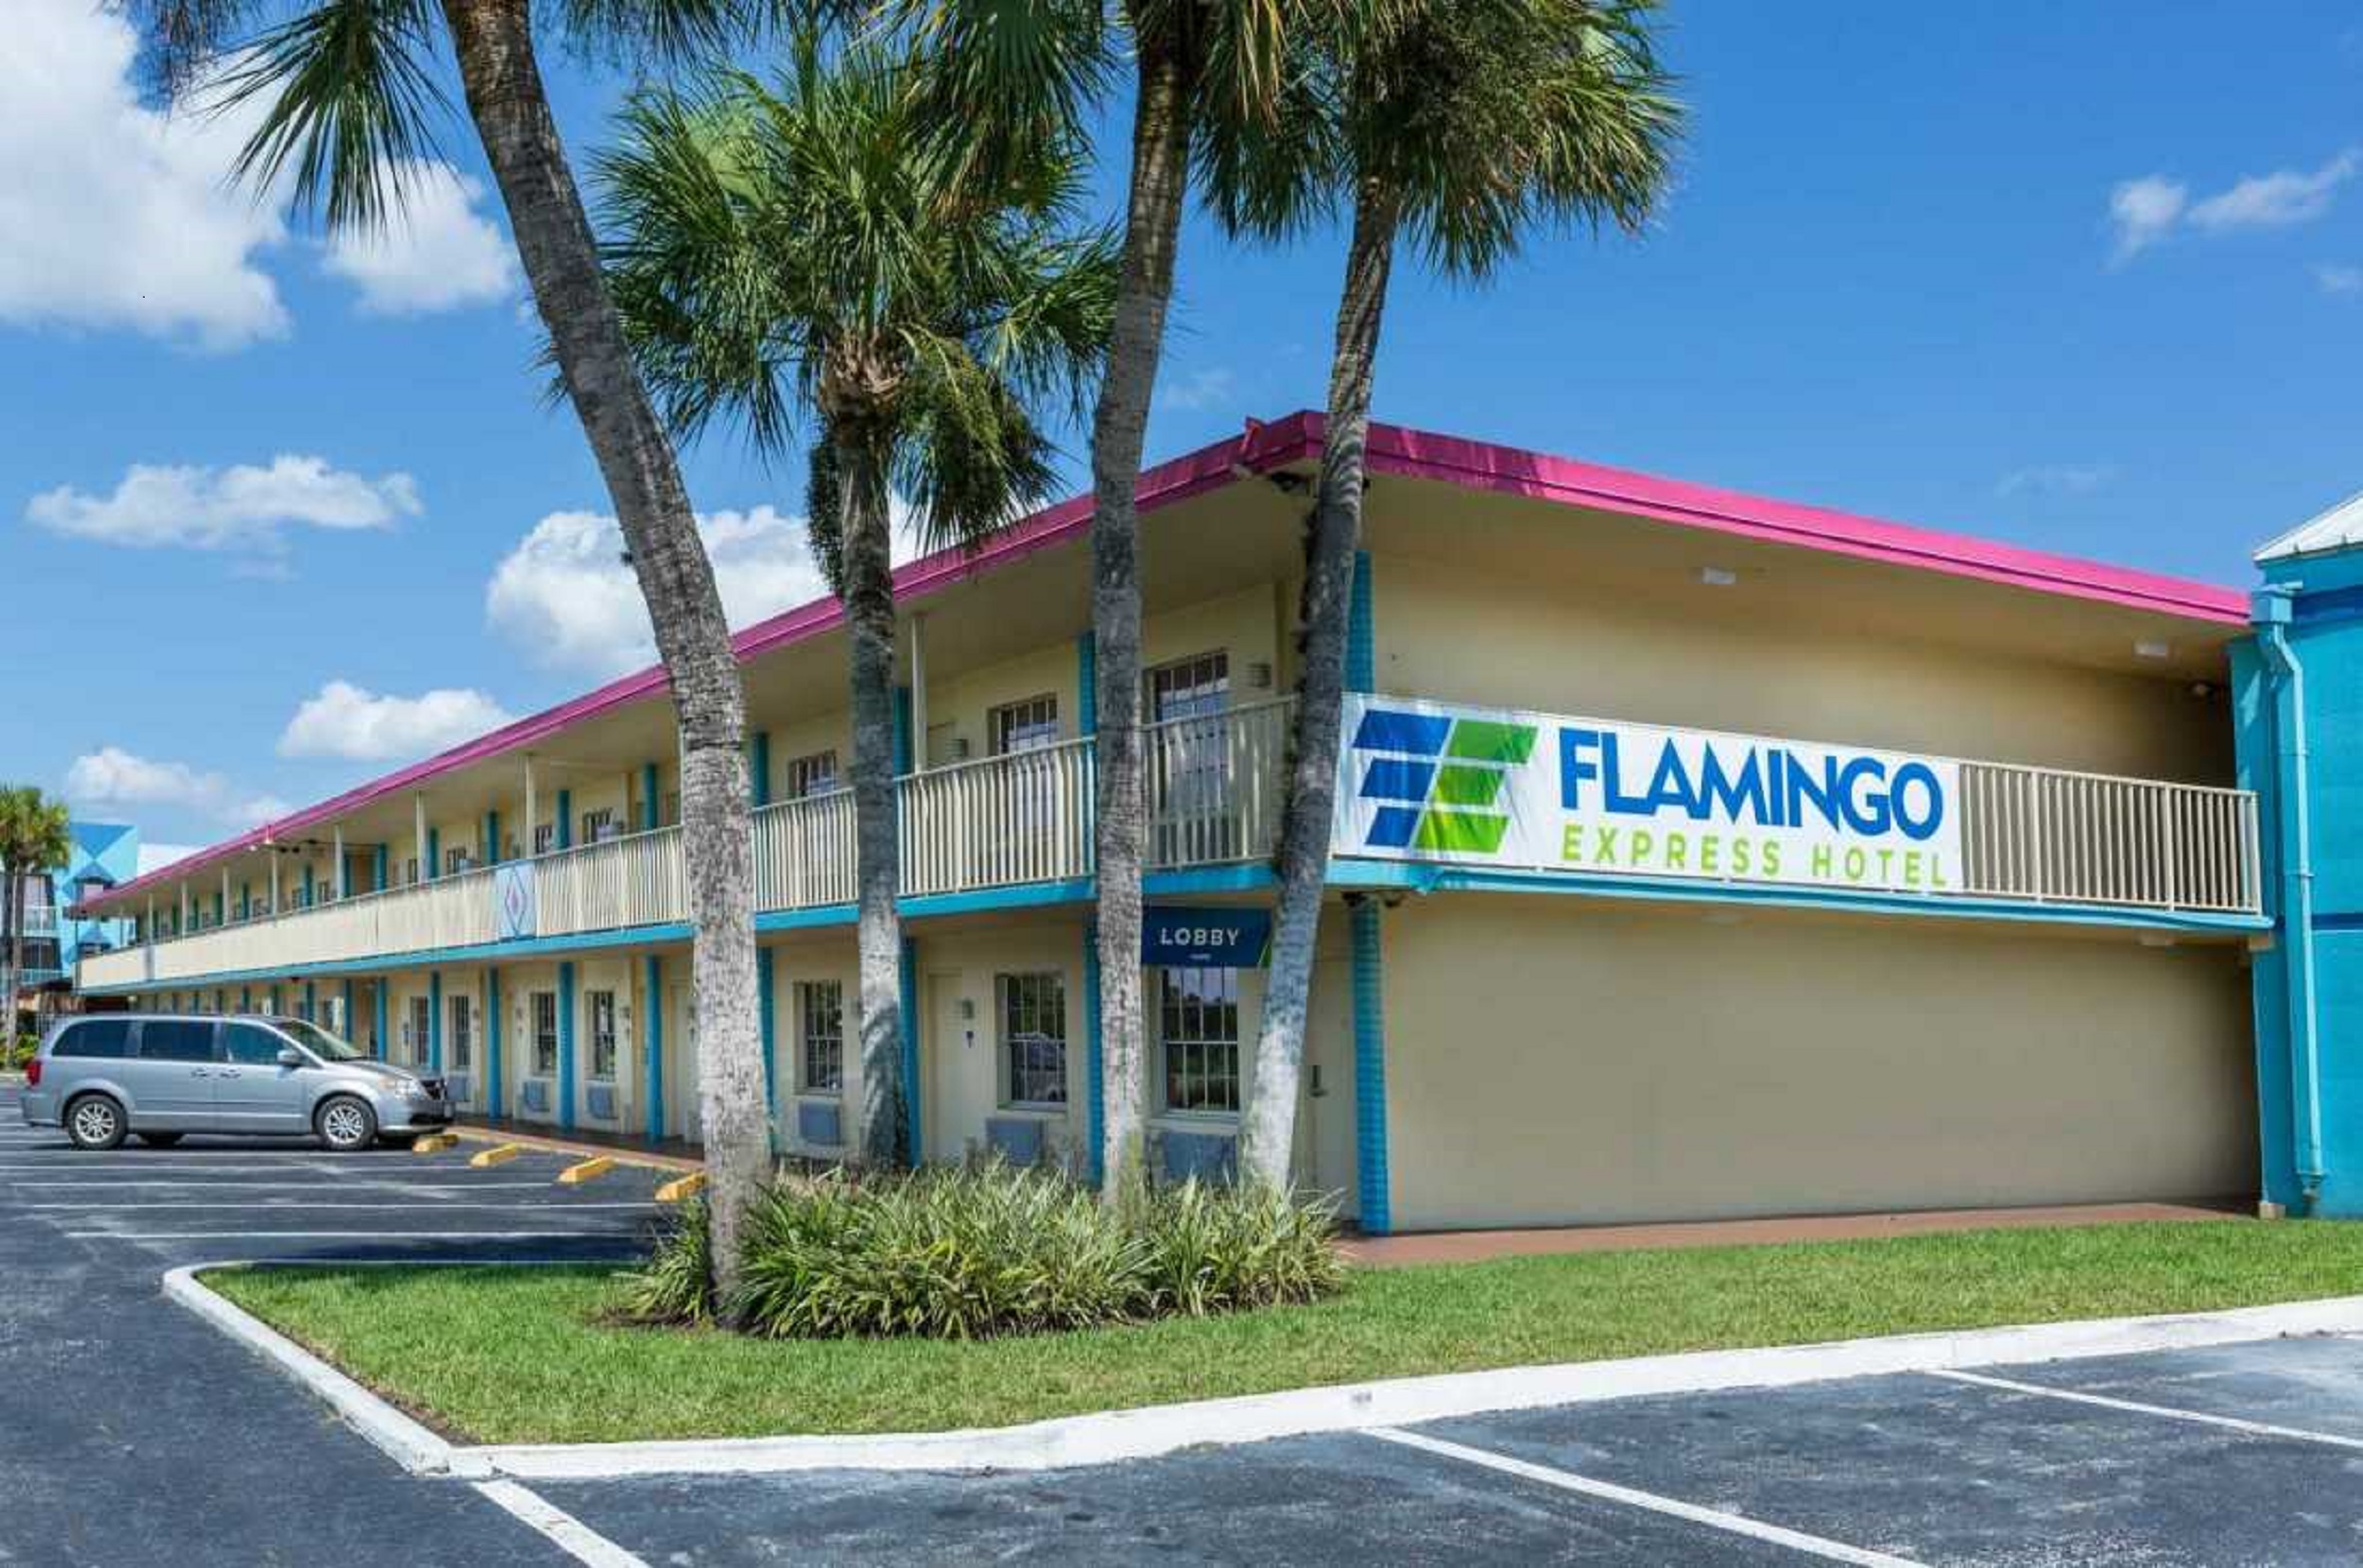 Flamingo Express Hotel image